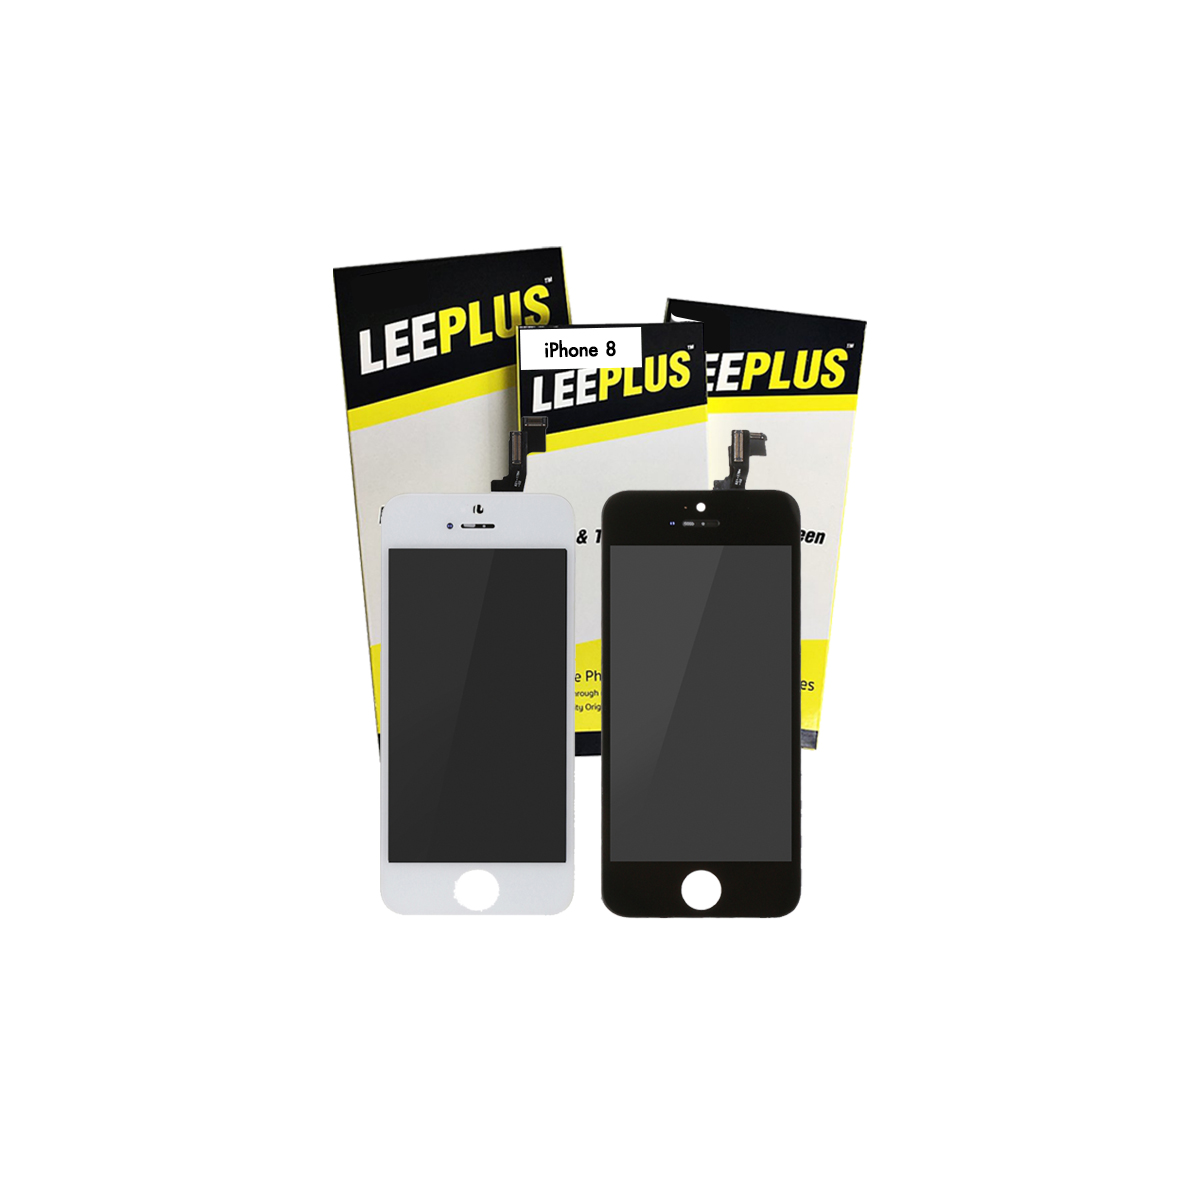 Leeplus จอไอโฟน 8 ของแท้ 100% ภาพสด ทัสลื่น รับประกัน 1 ปี สี ขาว/ดำ ฟรีอุปกรณ์เปลี่ยน  ตระกูลสี ดำรูปแบบรุ่นที่ีรองรับ Apple iPhone 8